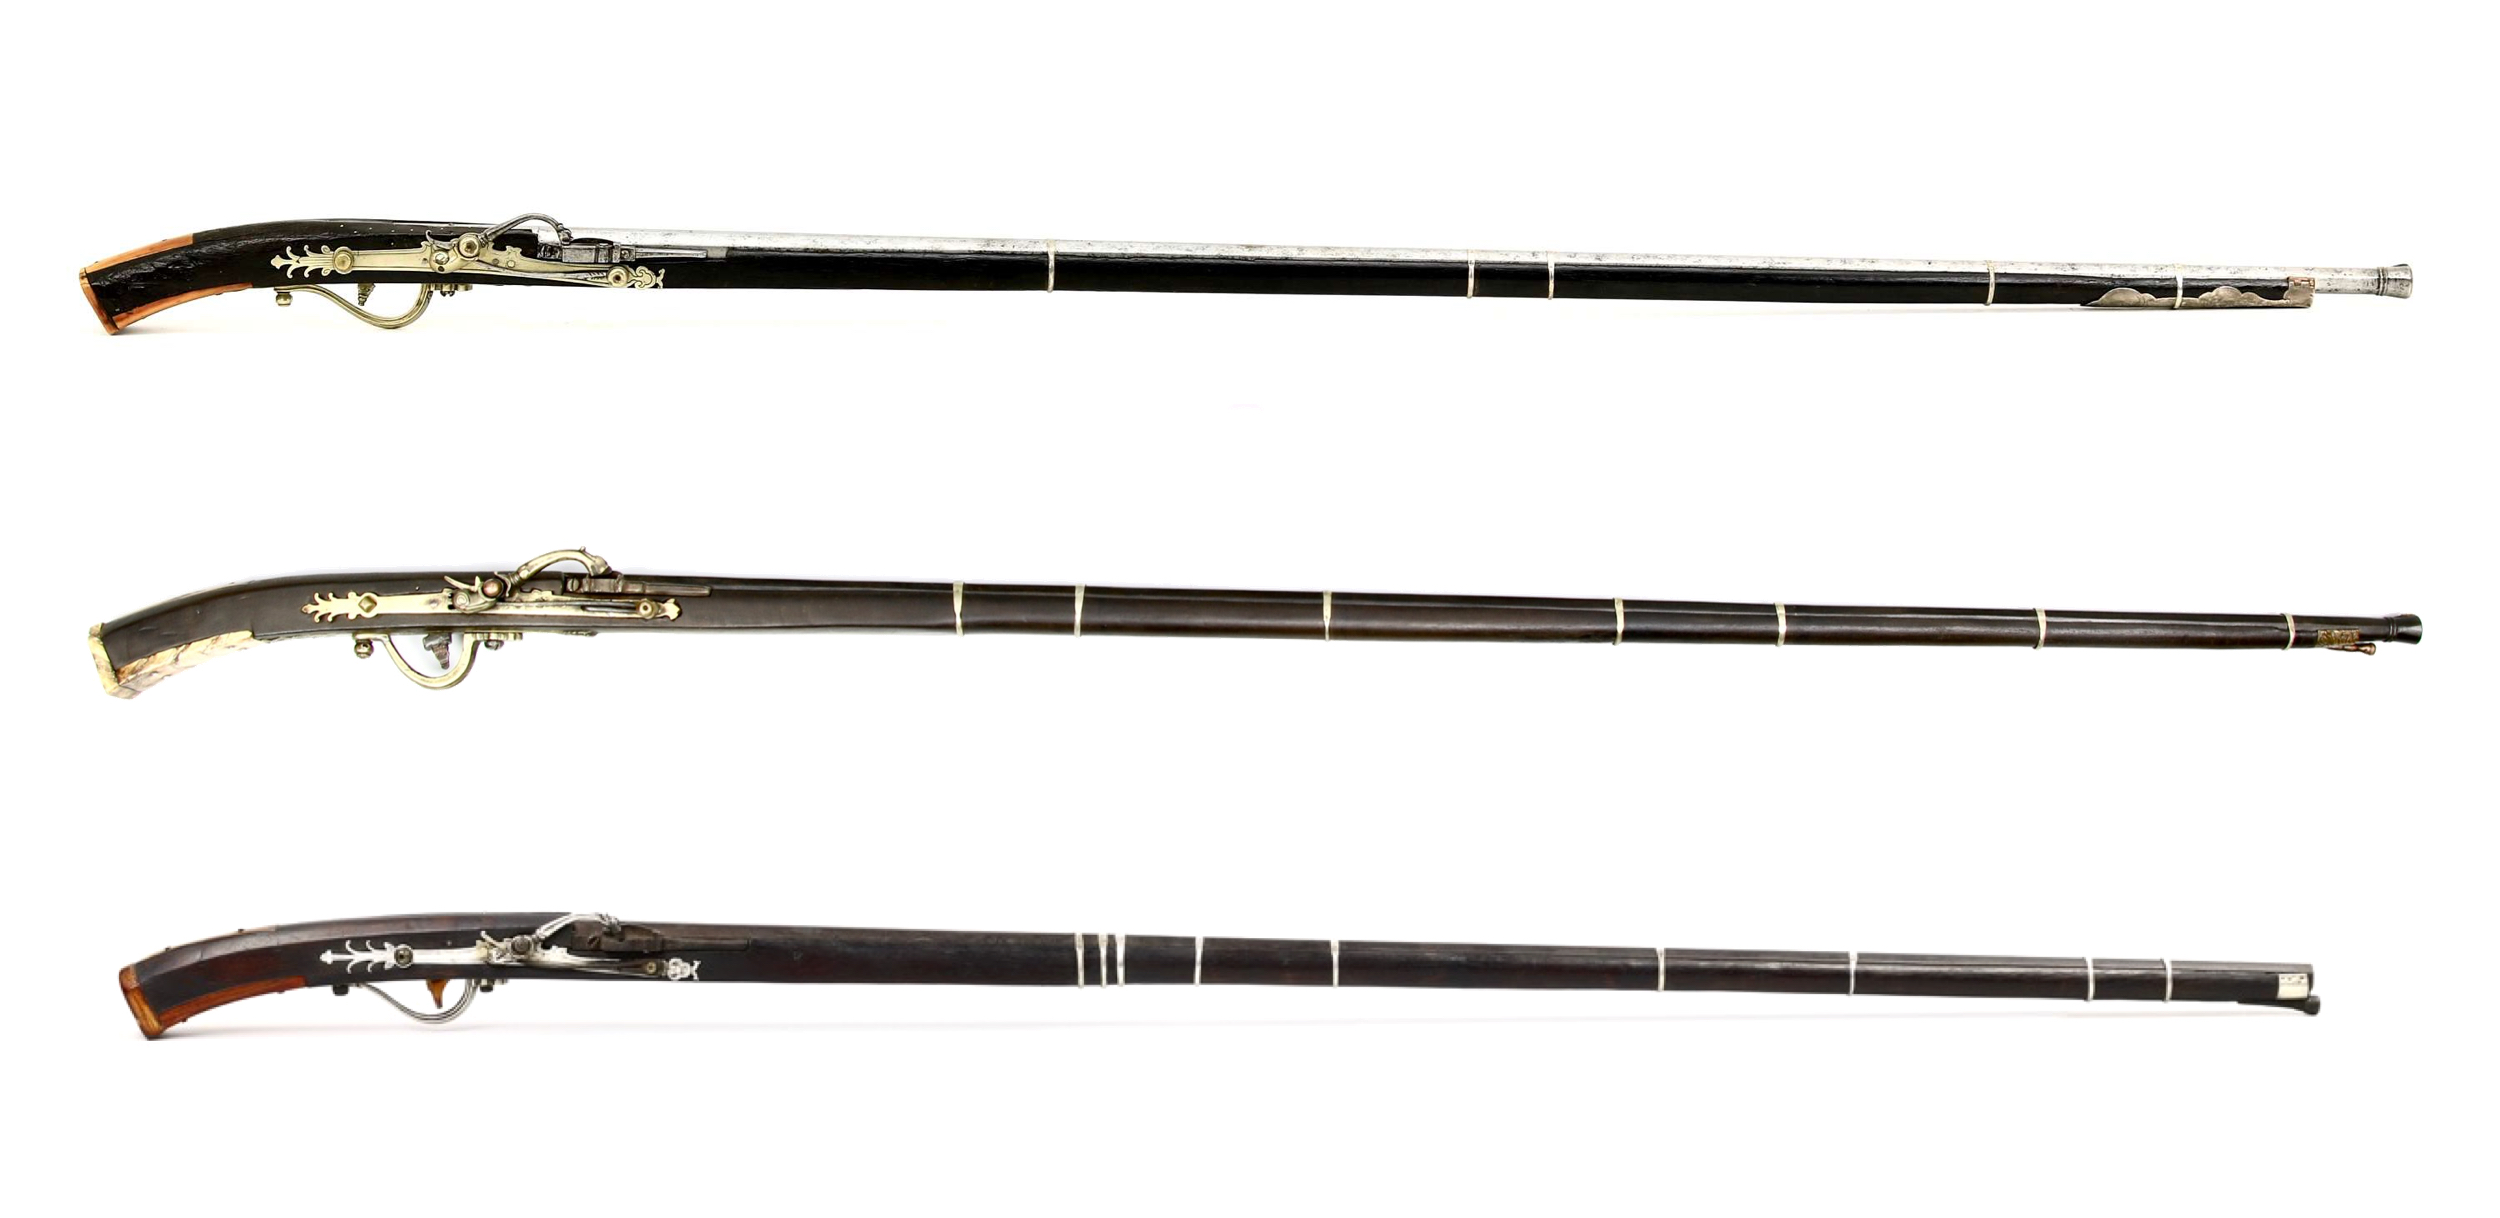 Vietnamese matchlock muskets